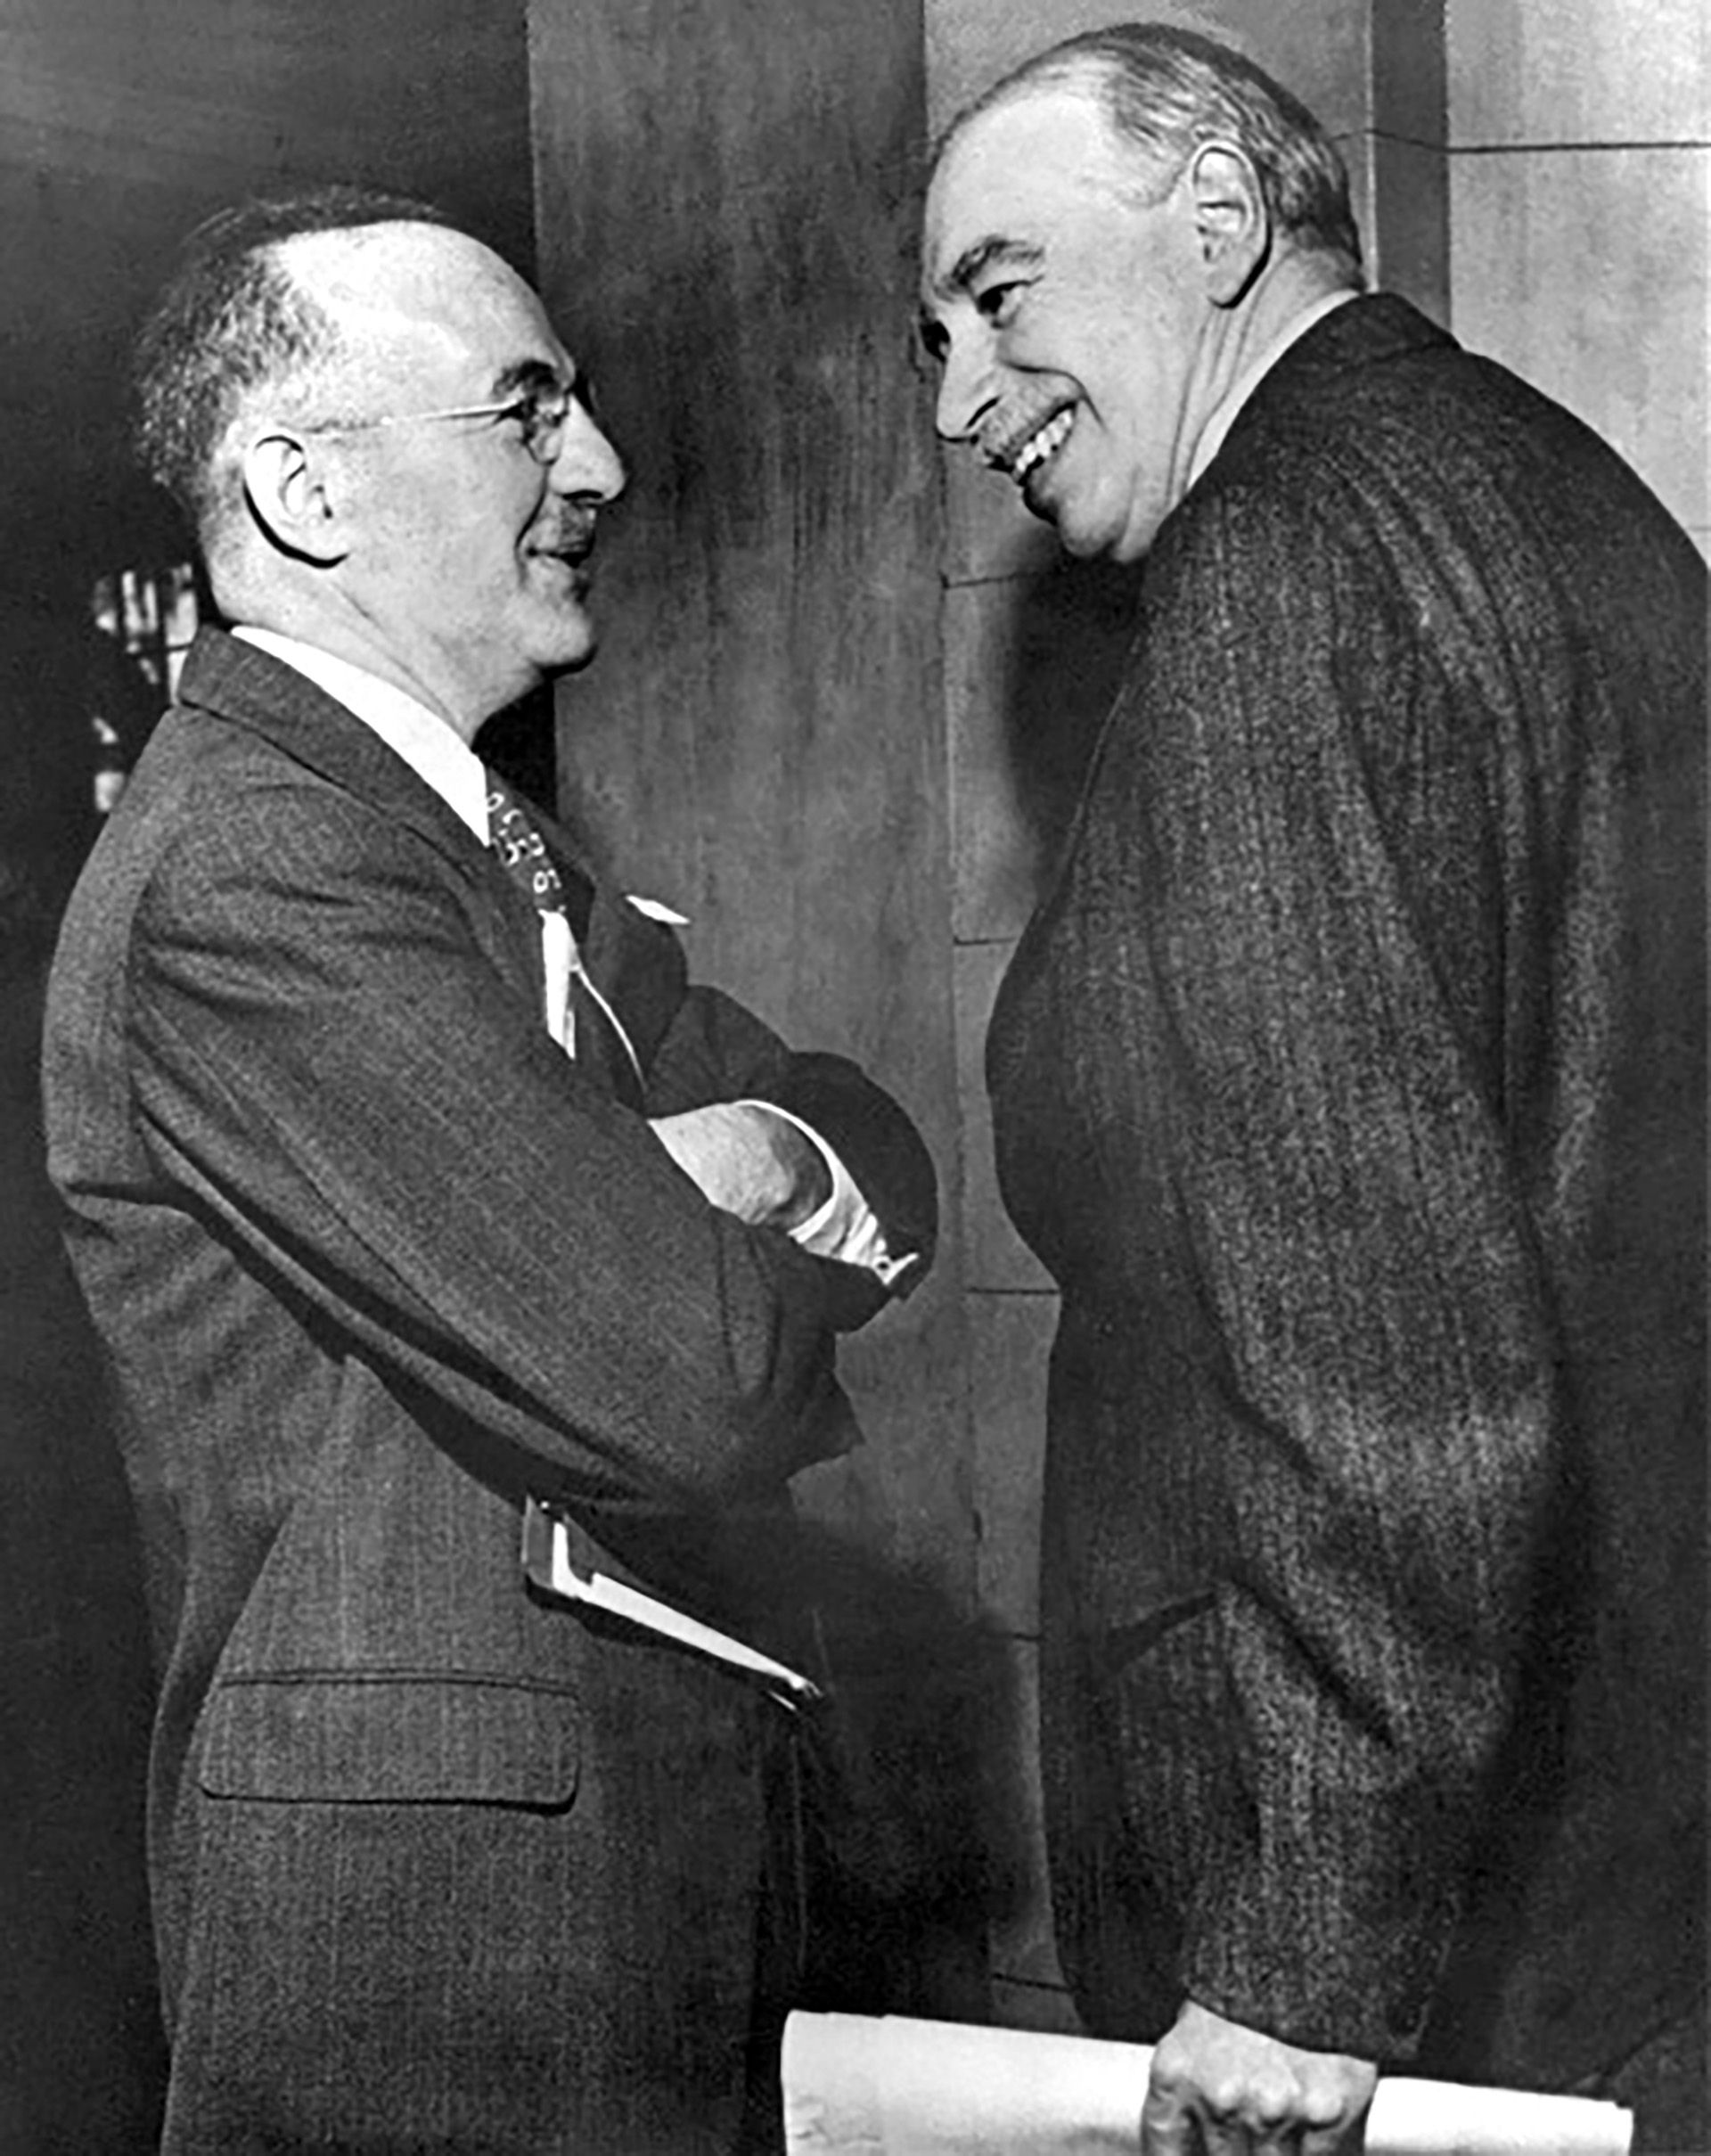 El secretario adjunto del Tesoro de Estados Unidos, Harry Dexter White (izq.) y John Maynard Keynes, asesor honorario del Tesoro del Reino Unido, en la reunión inaugural de la Junta de Gobernadores del FMI en Savannah, Georgia, el 8 de marzo de 1946 (FMI).